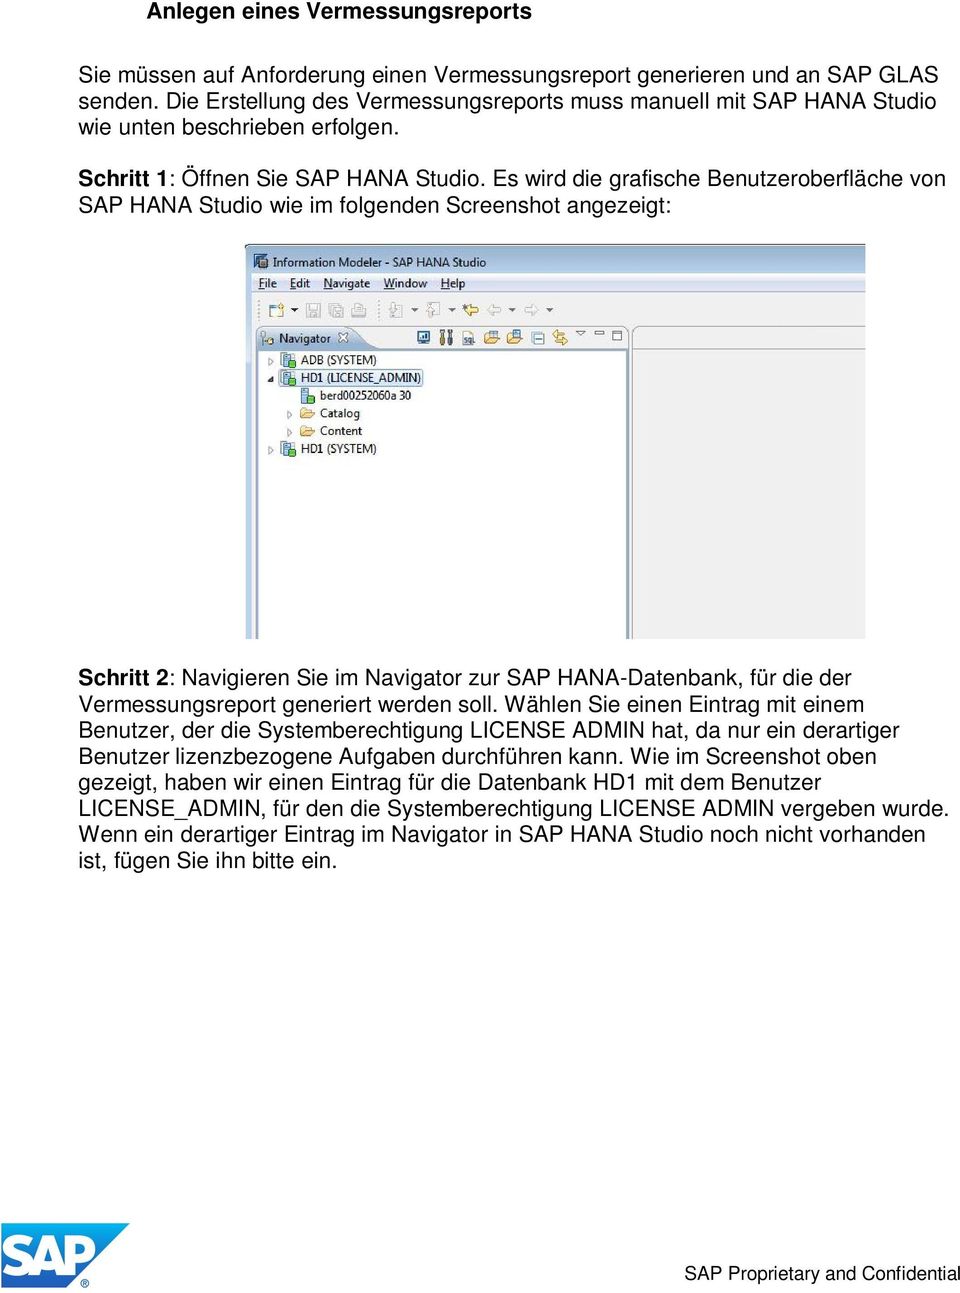 Es wird die grafische Benutzeroberfläche von SAP HANA Studio wie im folgenden Screenshot angezeigt: Schritt 2: Navigieren Sie im Navigator zur SAP HANA-Datenbank, für die der Vermessungsreport